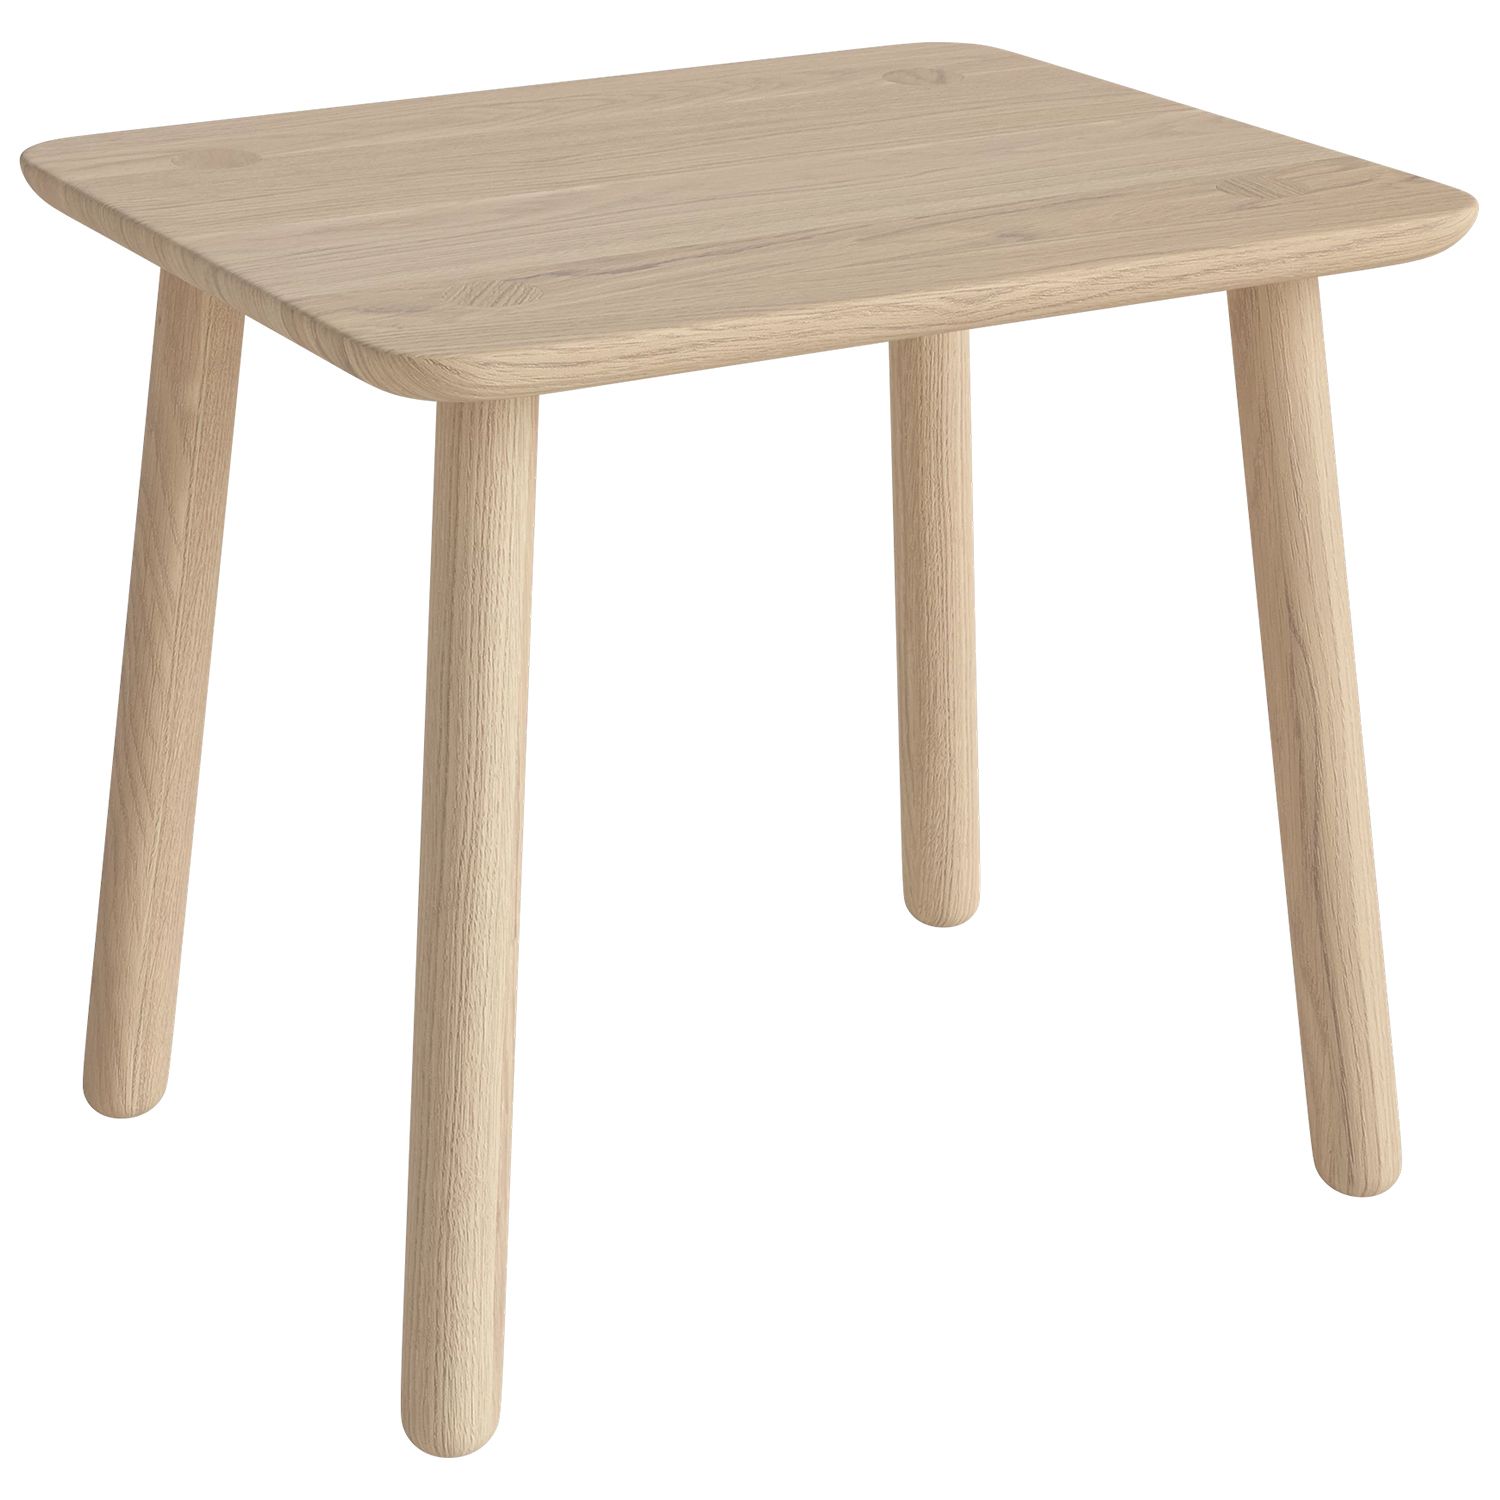 Bolia designové konferenční stoly Forest Coffee Table Rectangular - DESIGNPROPAGANDA